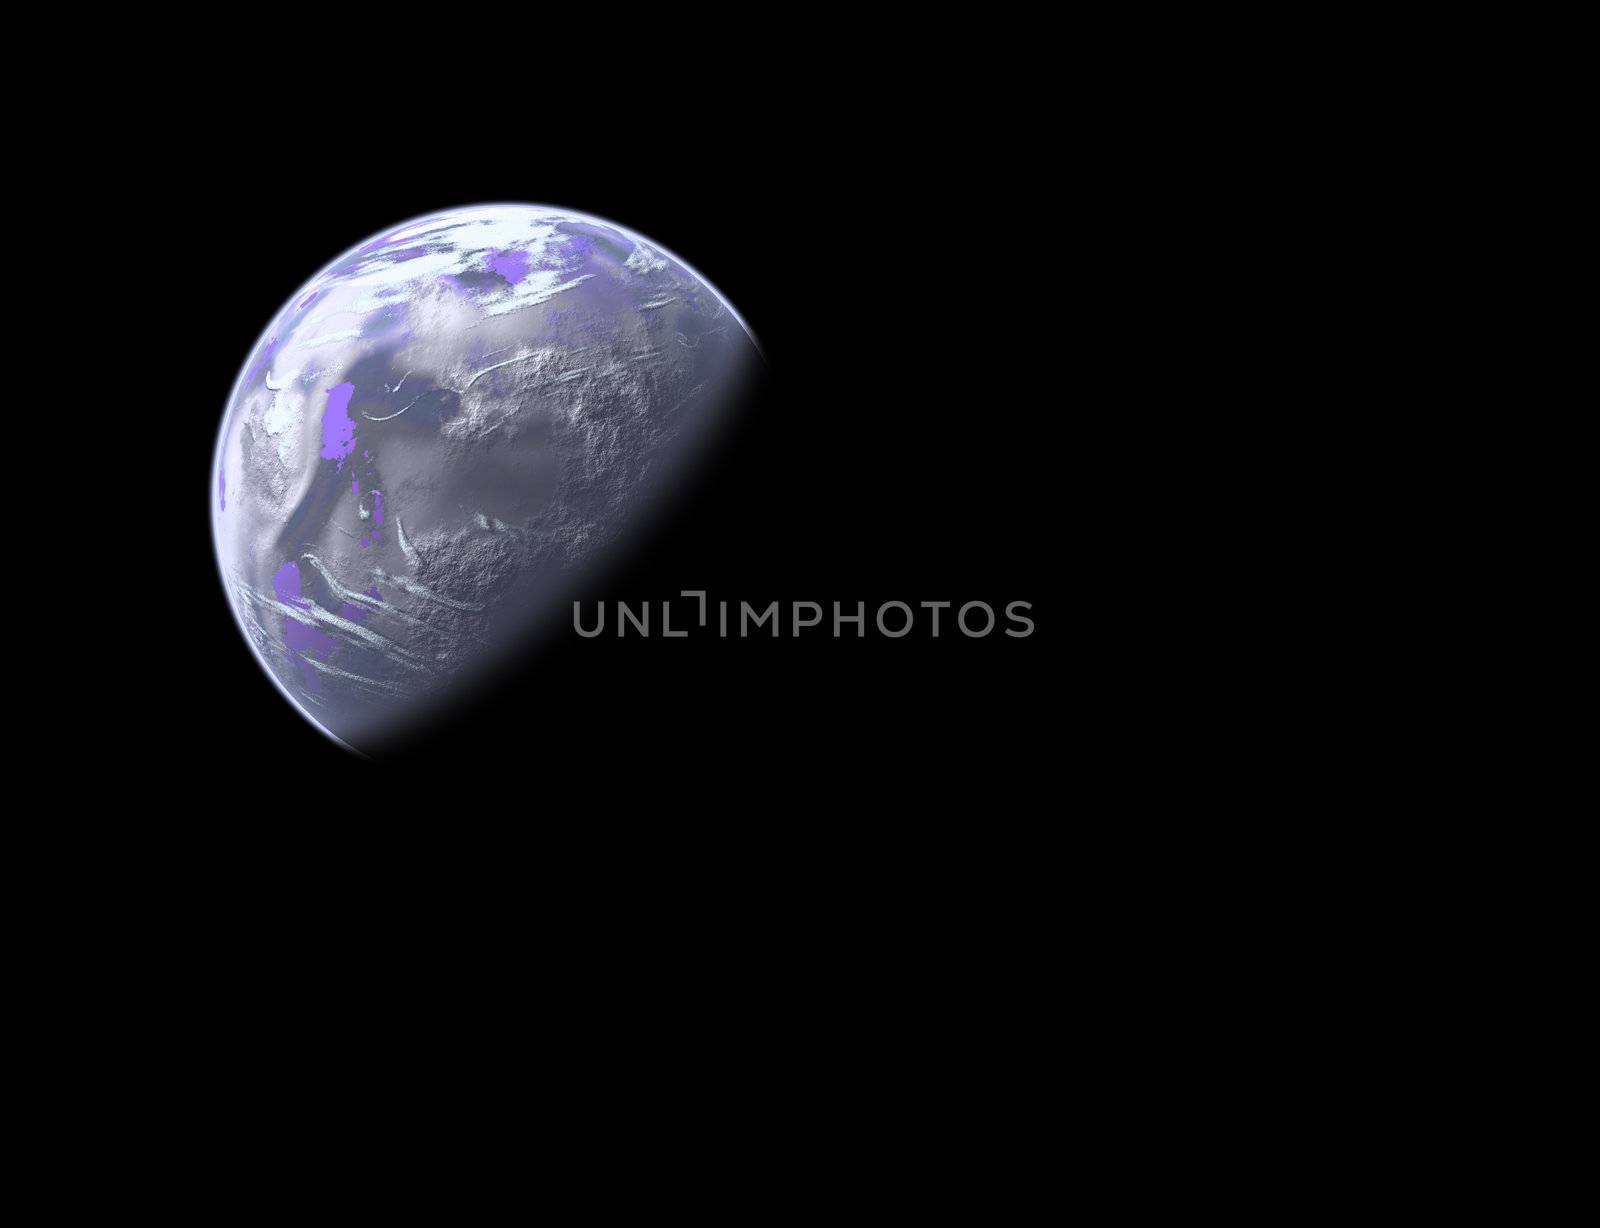 earthlike planet in space by furzyk73